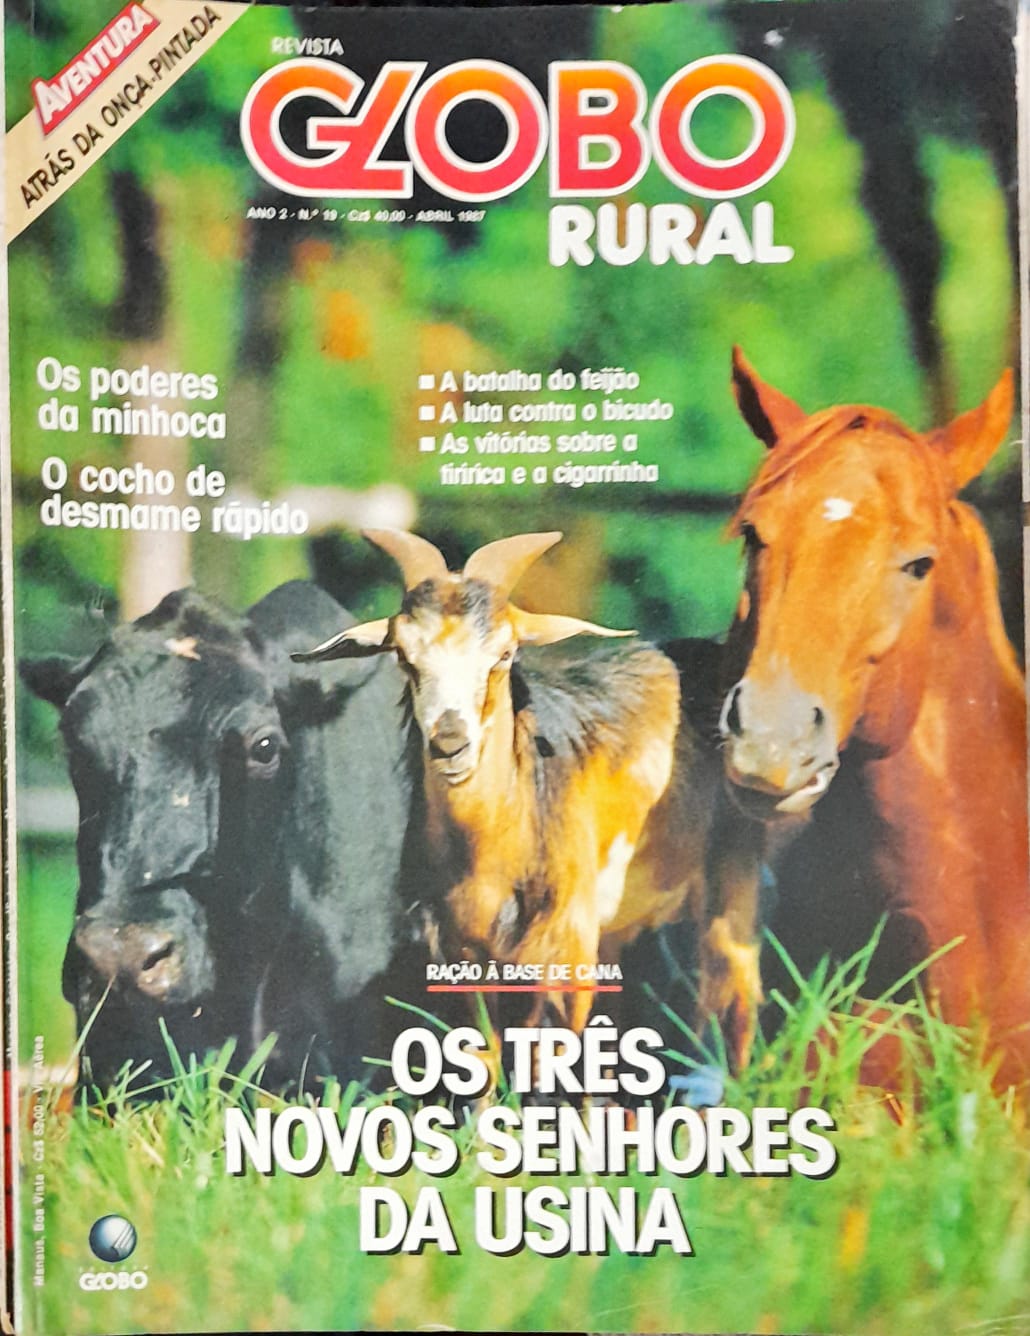 Globo Rural, Globo Rural